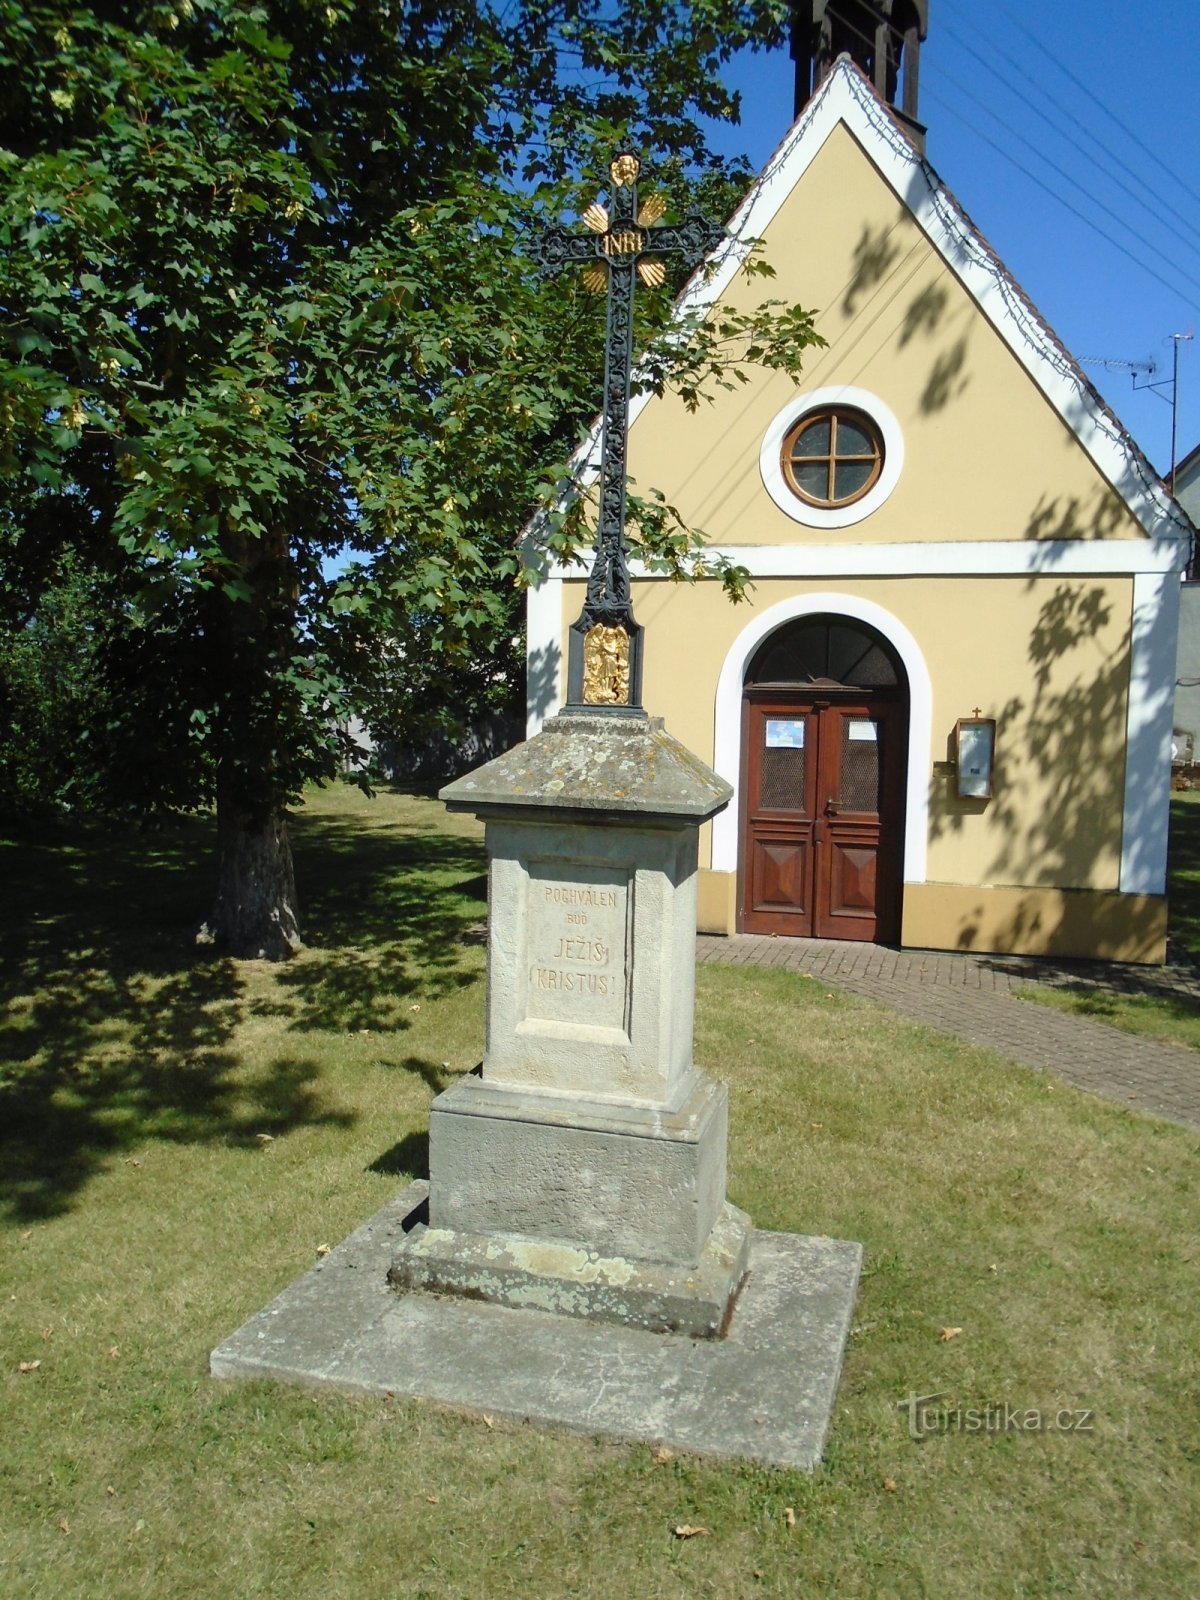 聖マリア礼拝堂前の十字架。 ネポマックのジョン (Ráby)